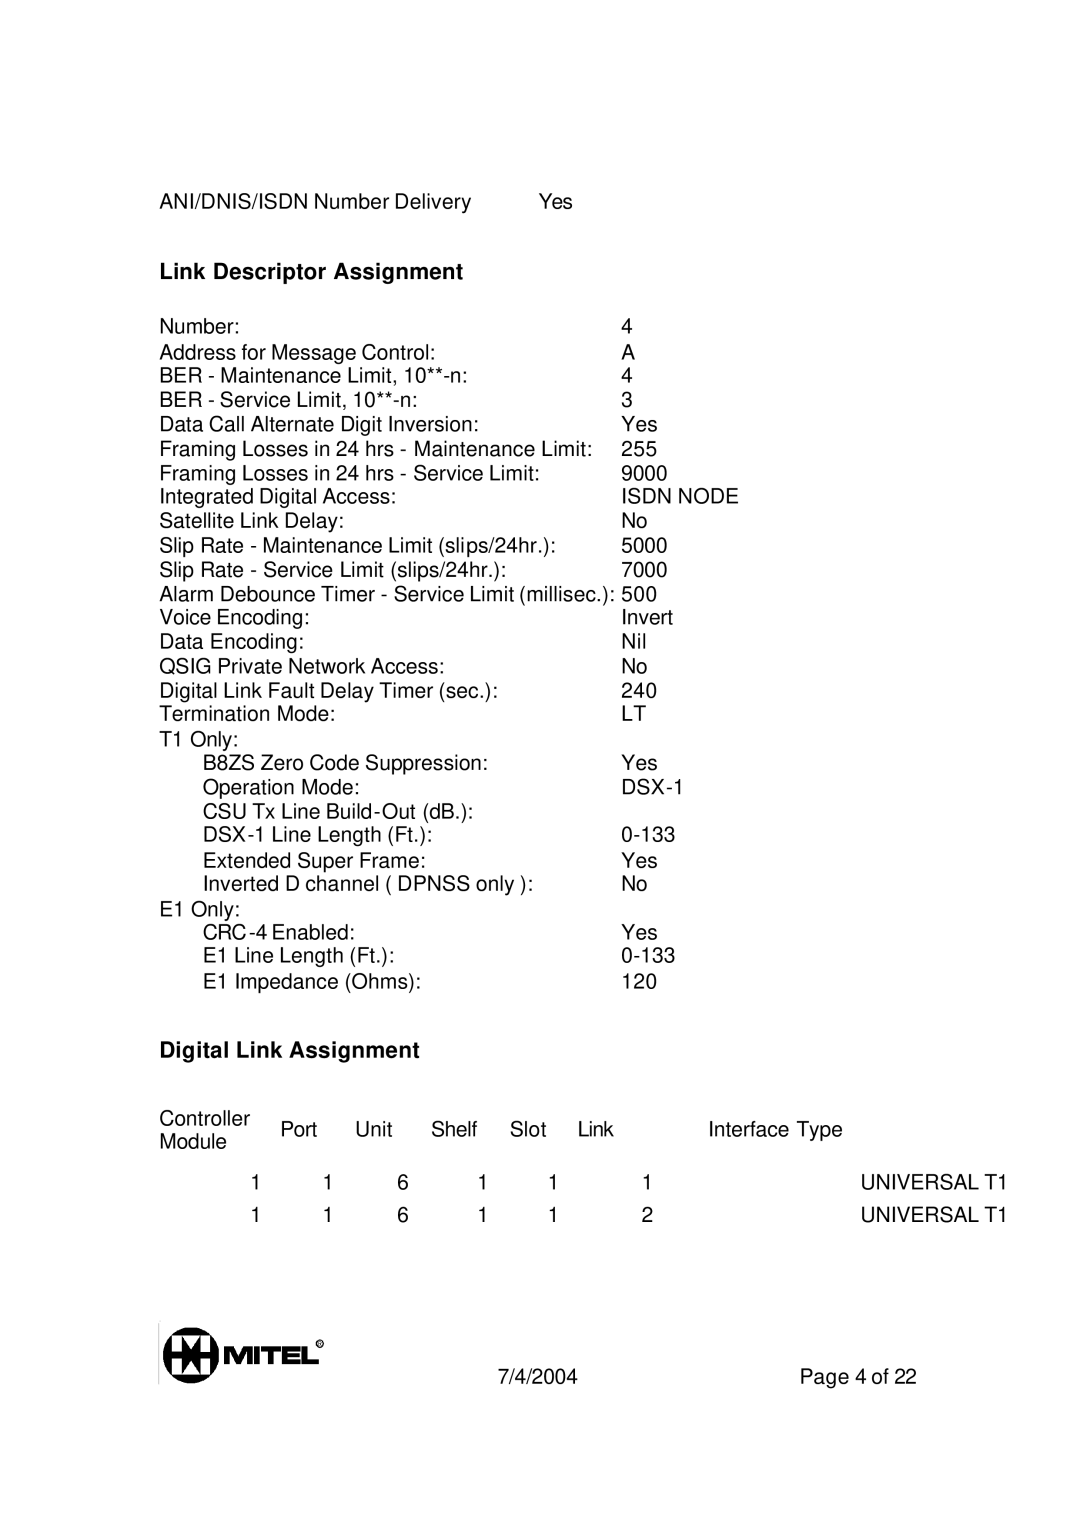 Mitel 3300 manual Link Descriptor Assignment, Digital Link Assignment 